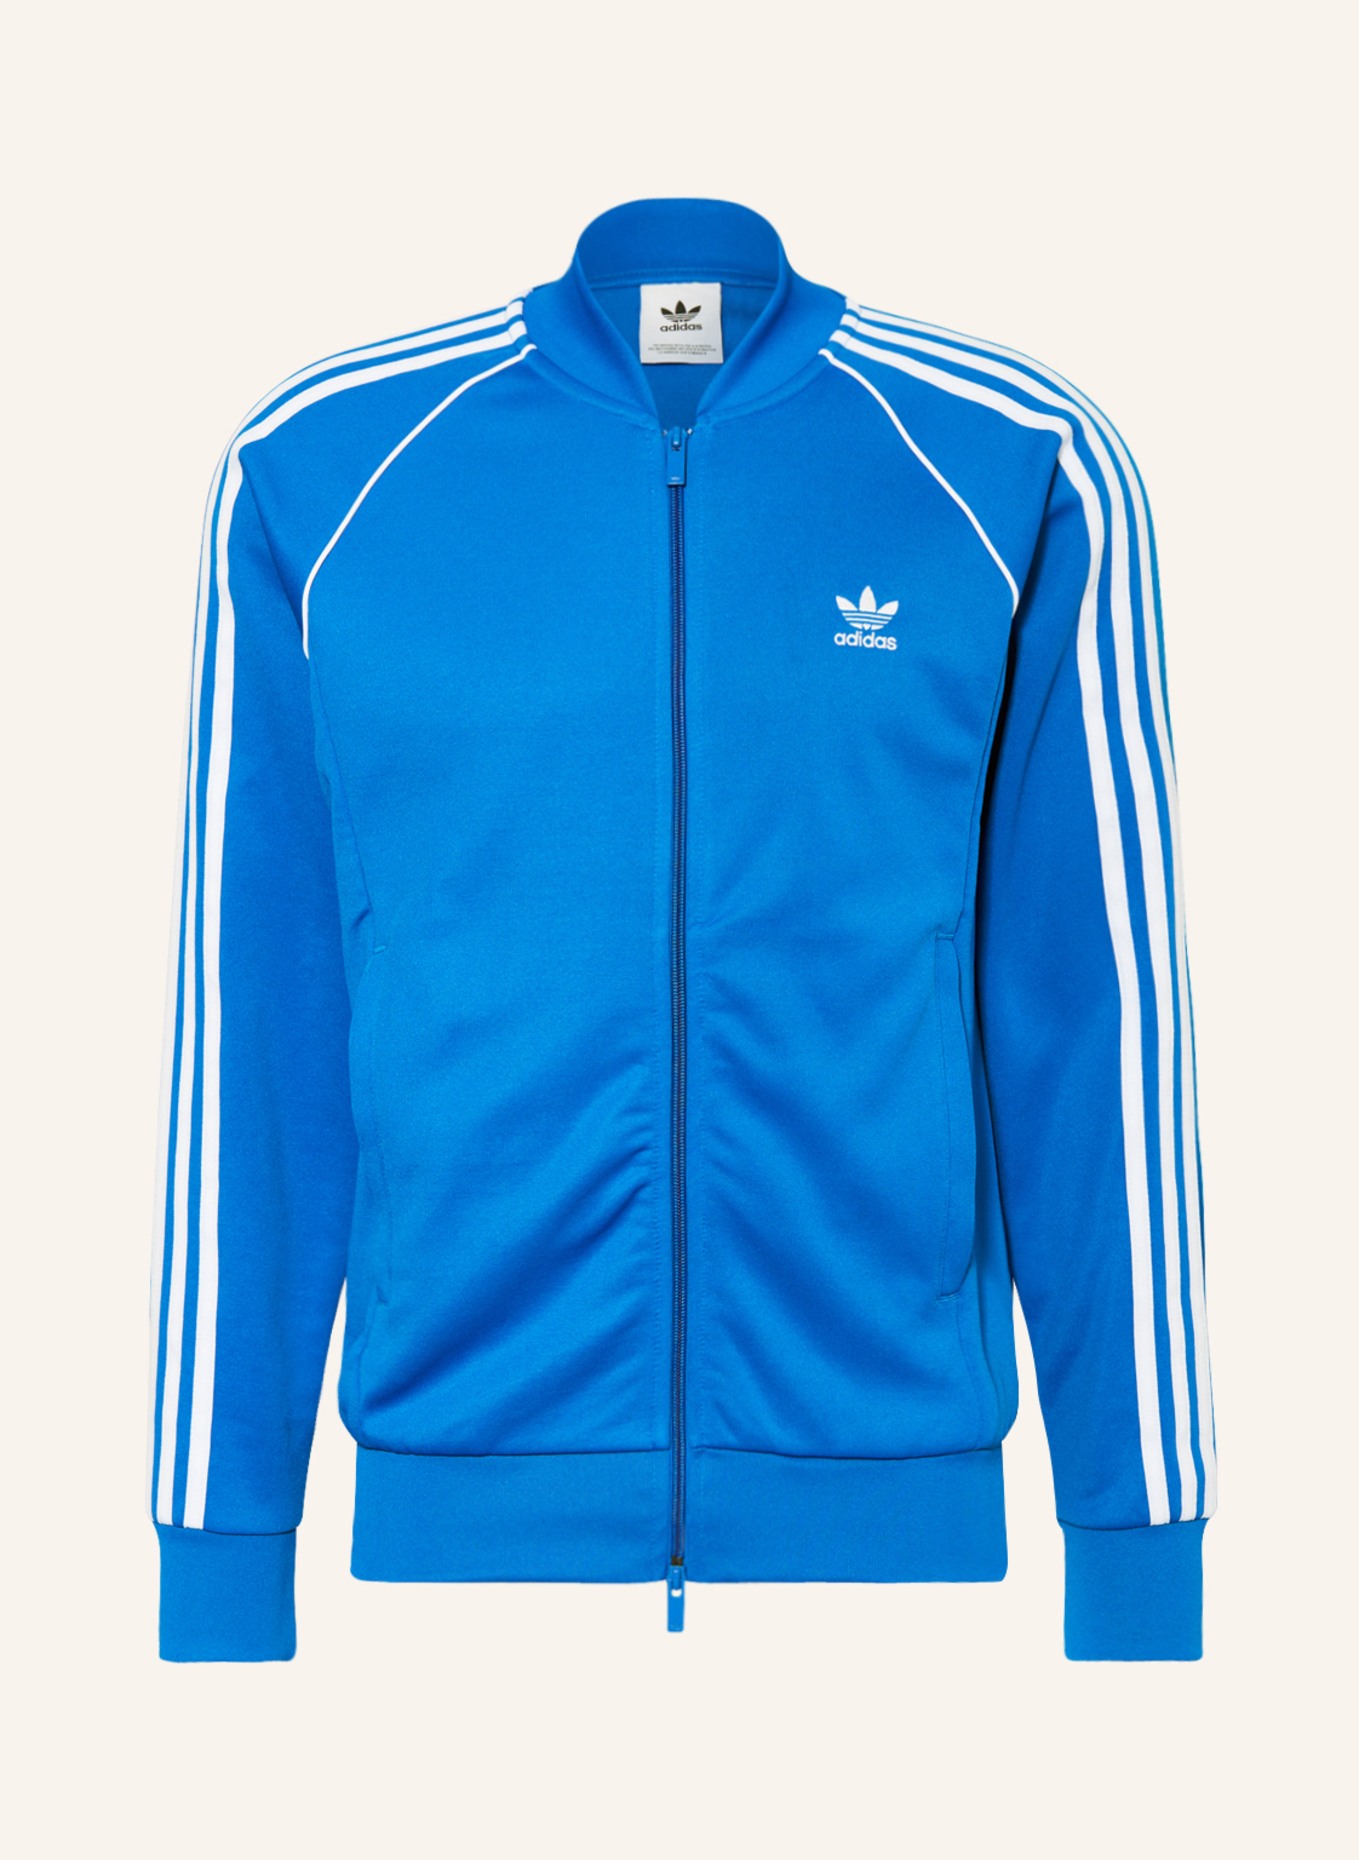 adidas Originals jacket white in SST ADICOLOR CLASSICS blue/ Training ORIGINALS